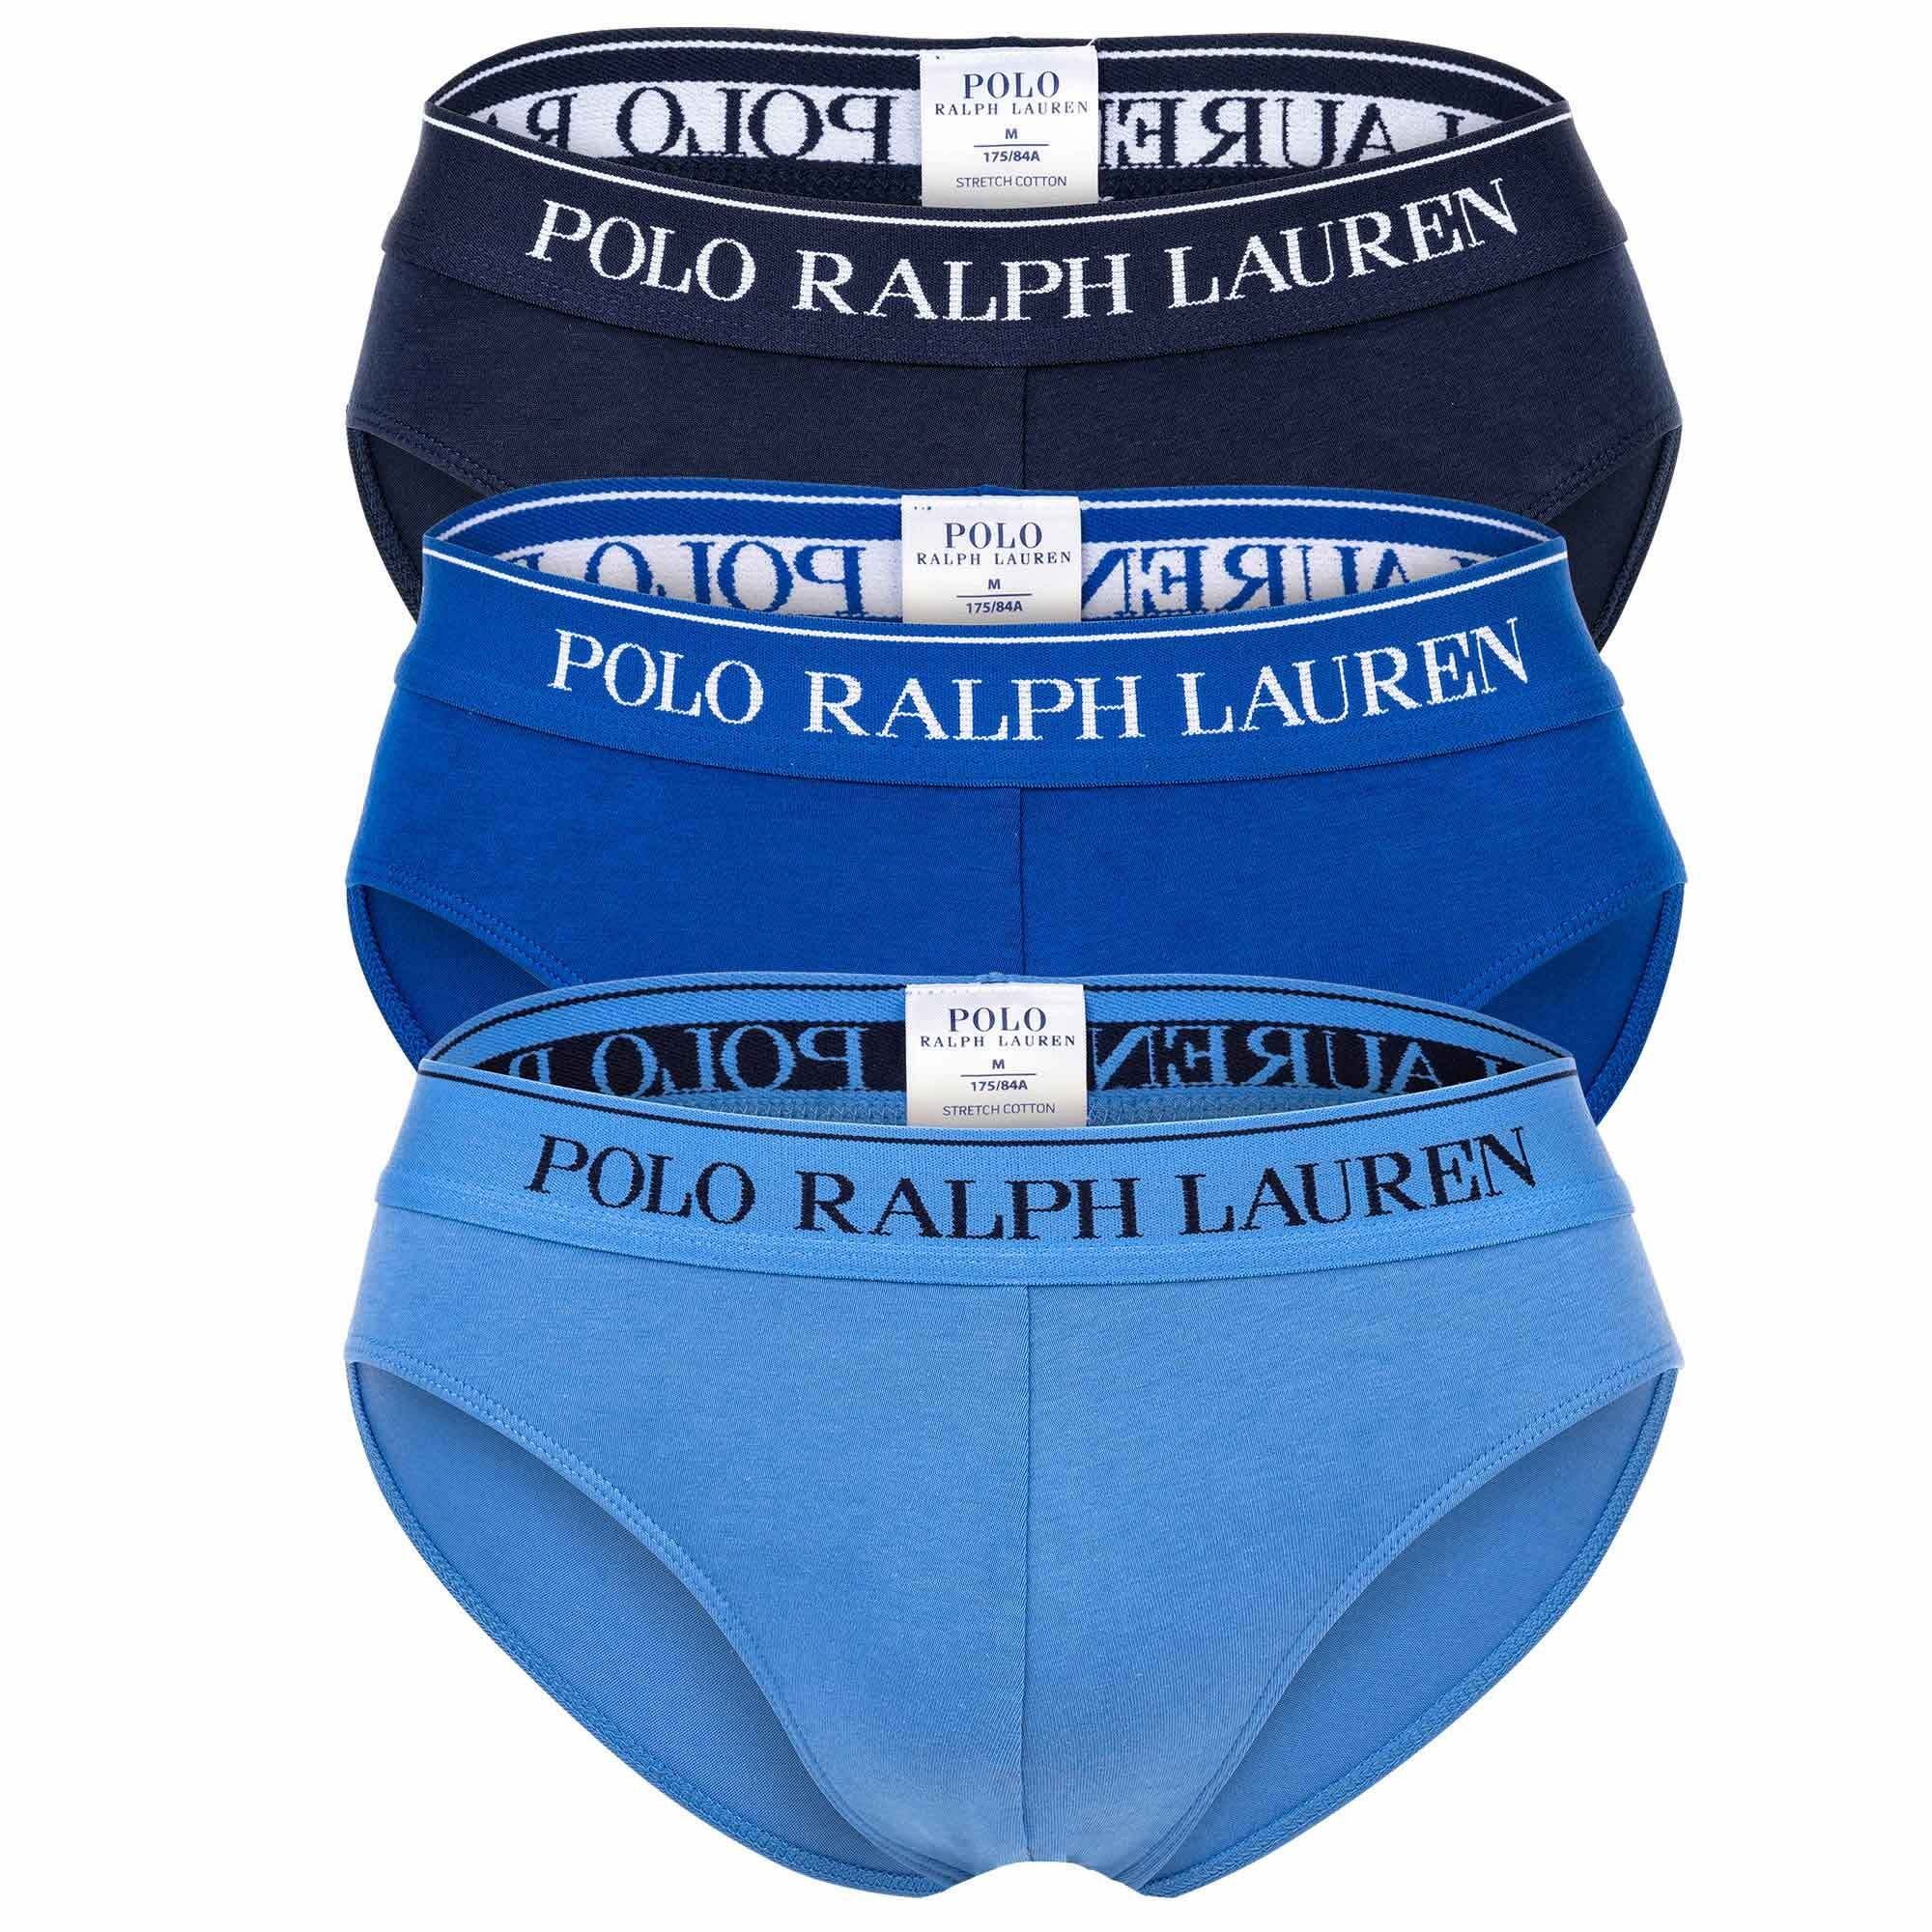 Polo Ralph Lauren Slip Herren Männer Slip Unterhose Brief Low Rise Blau/Dunkelblau